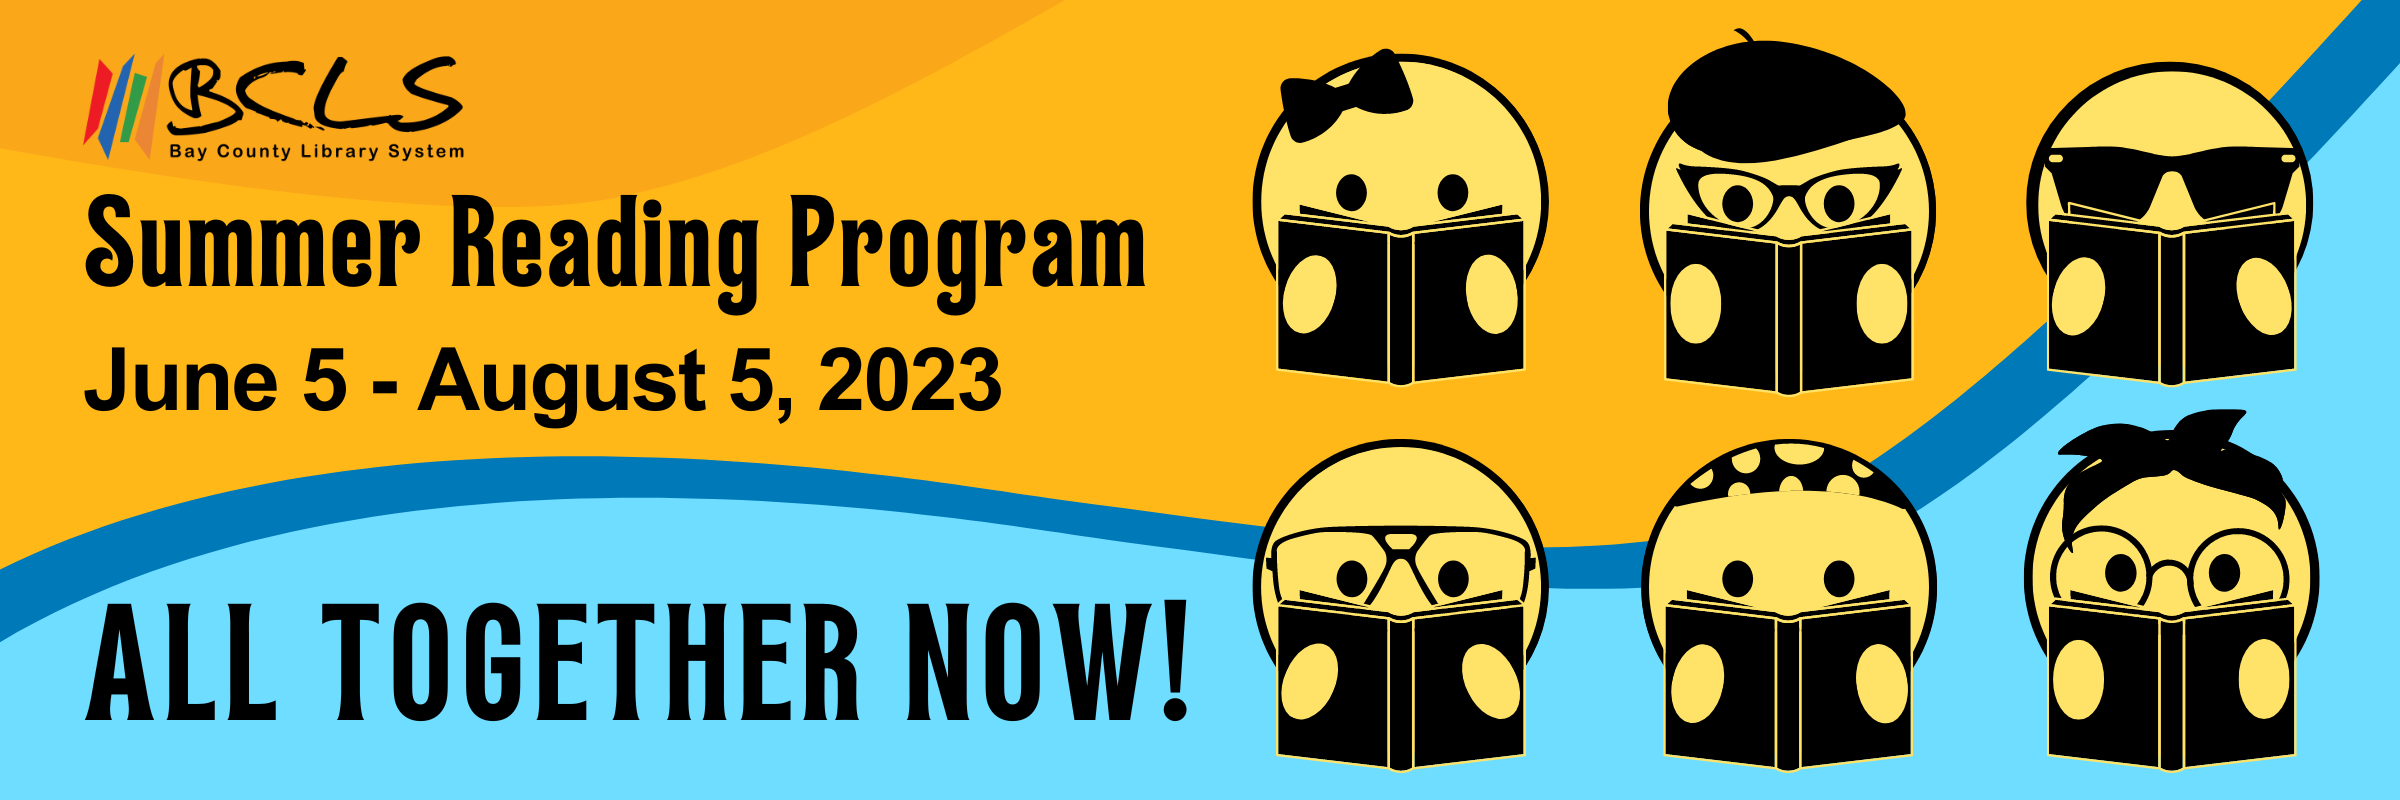 BCLS Summer Reading Program 2023